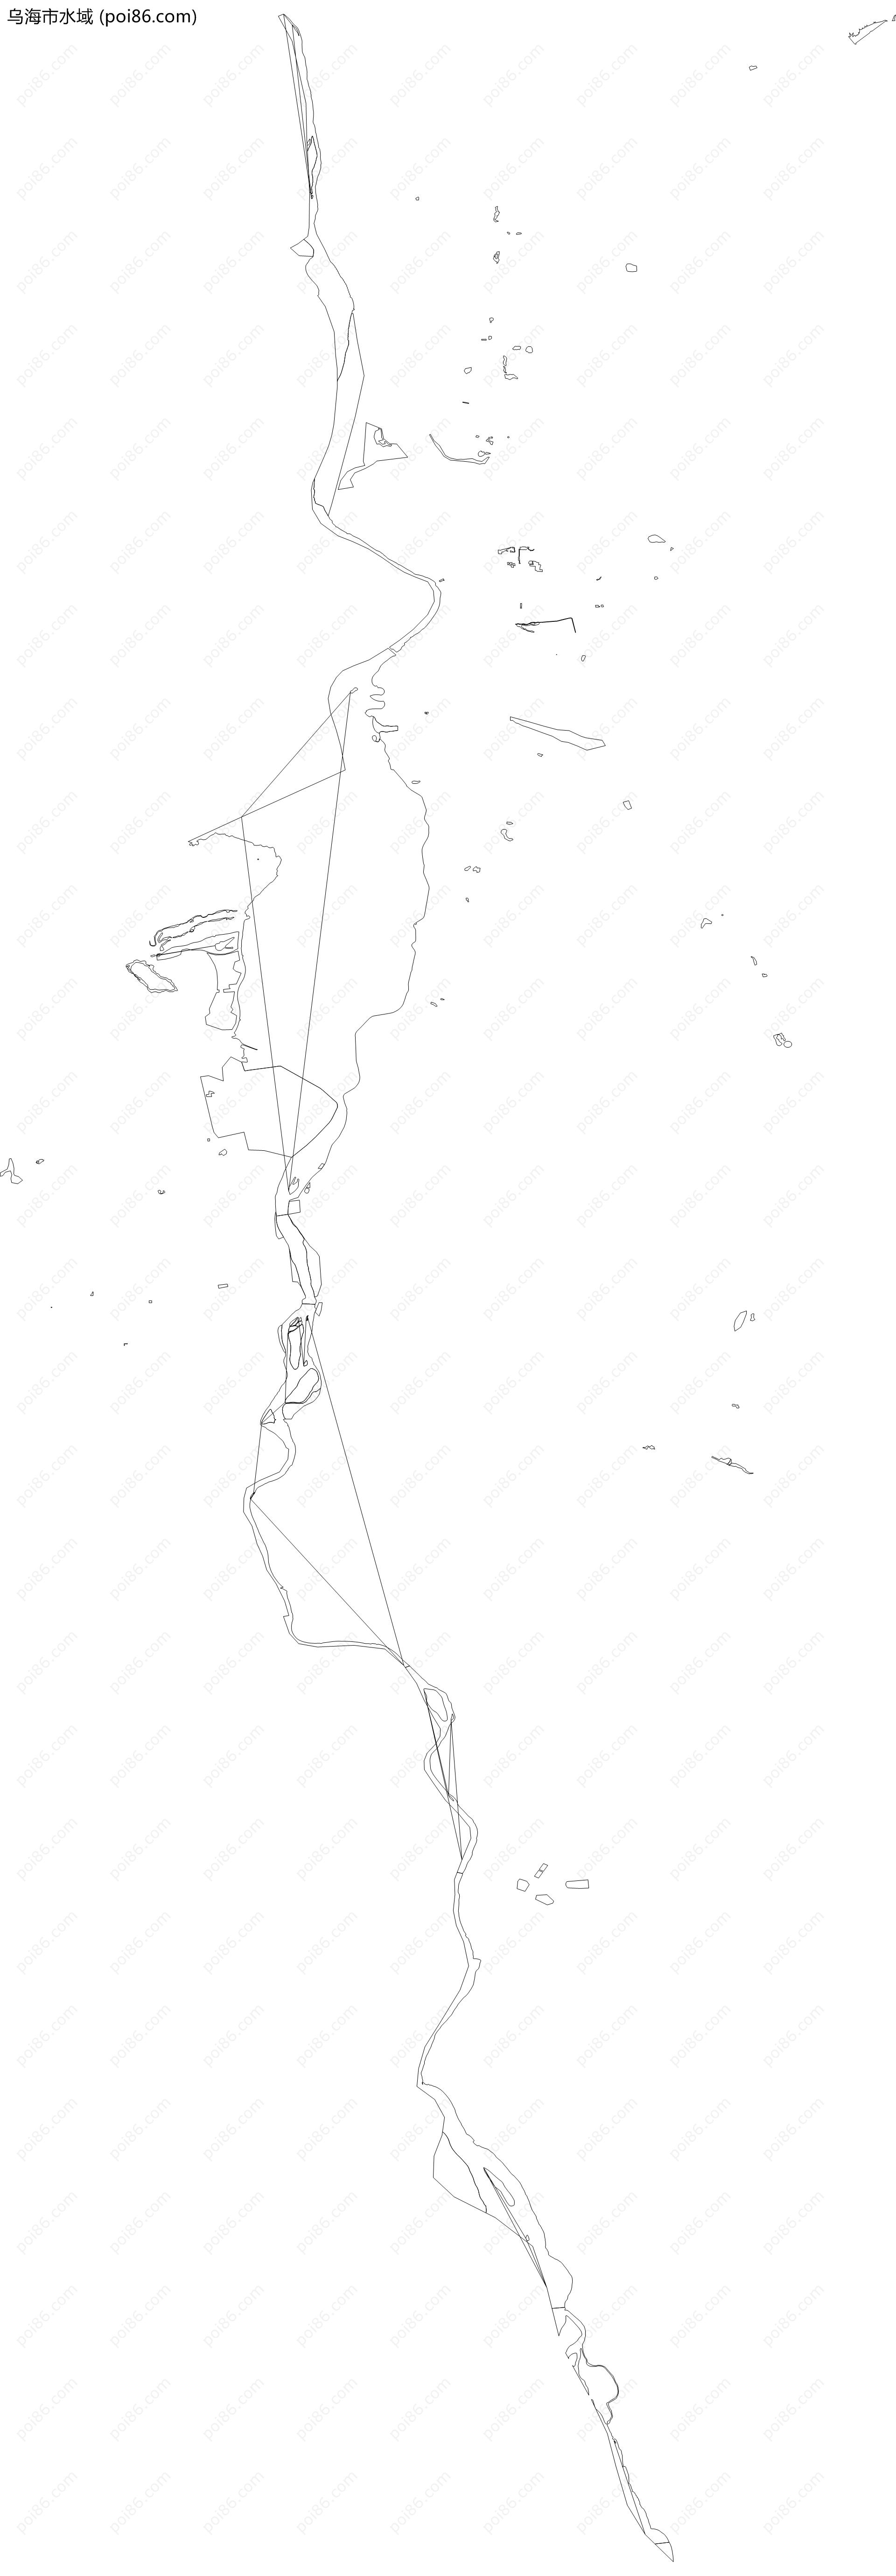 乌海市水域地图